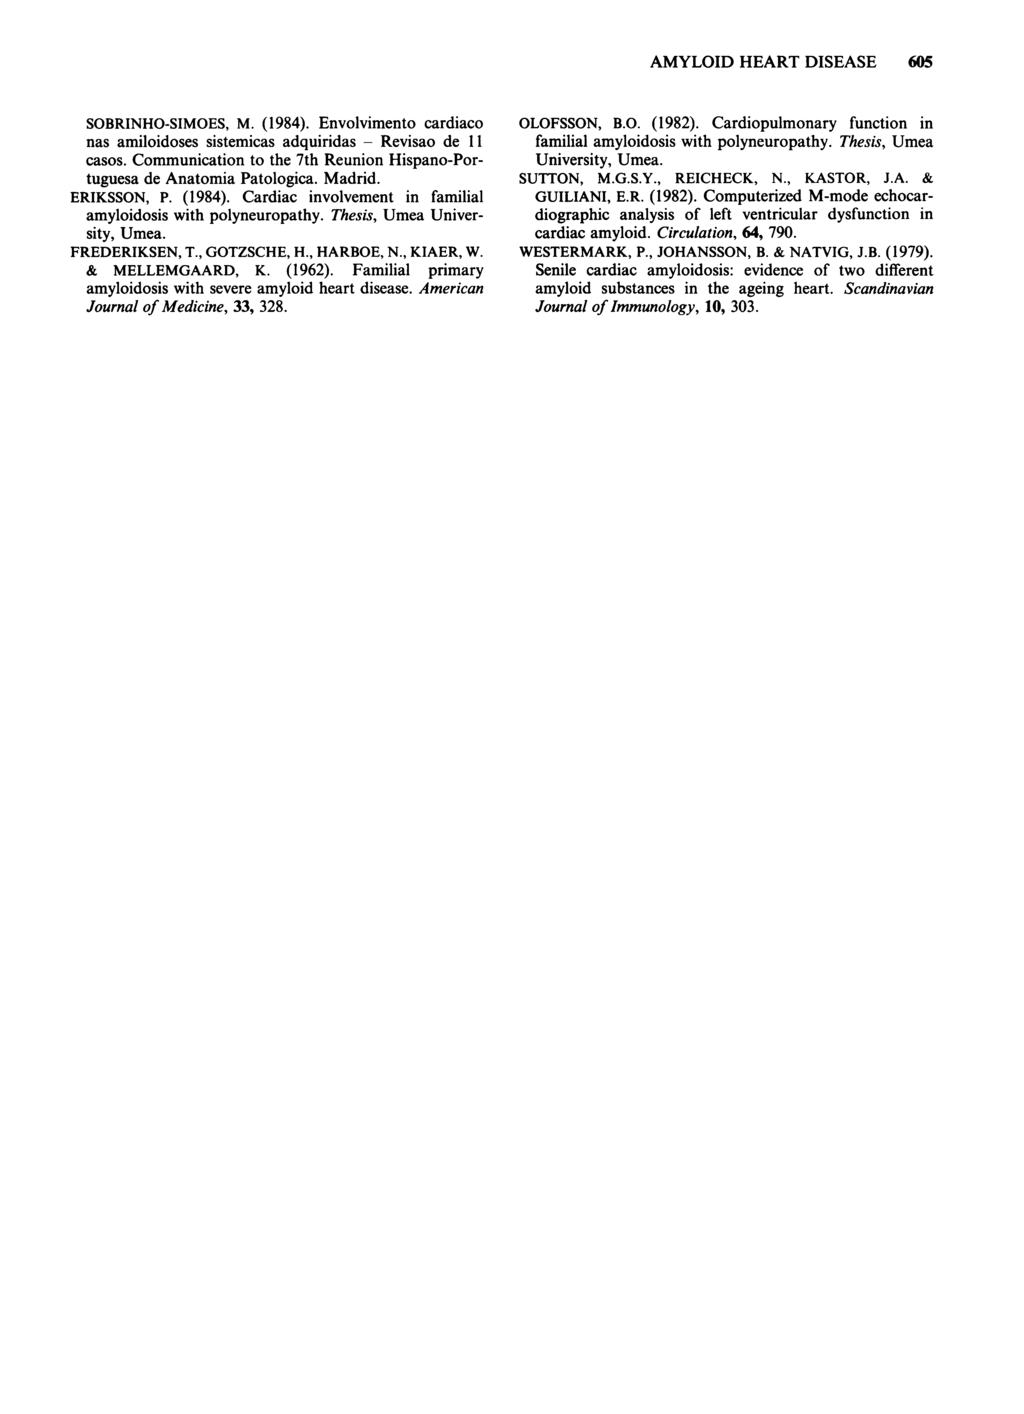 SOBRINHO-SIMOES, M. (1984). Envolvimento cardiaco nas amiloidoses sistemicas adquiridas - Revisao de 11 casos. Communication to the 7th Reunion Hispano-Portuguesa de Anatomia Patologica. Madrid.